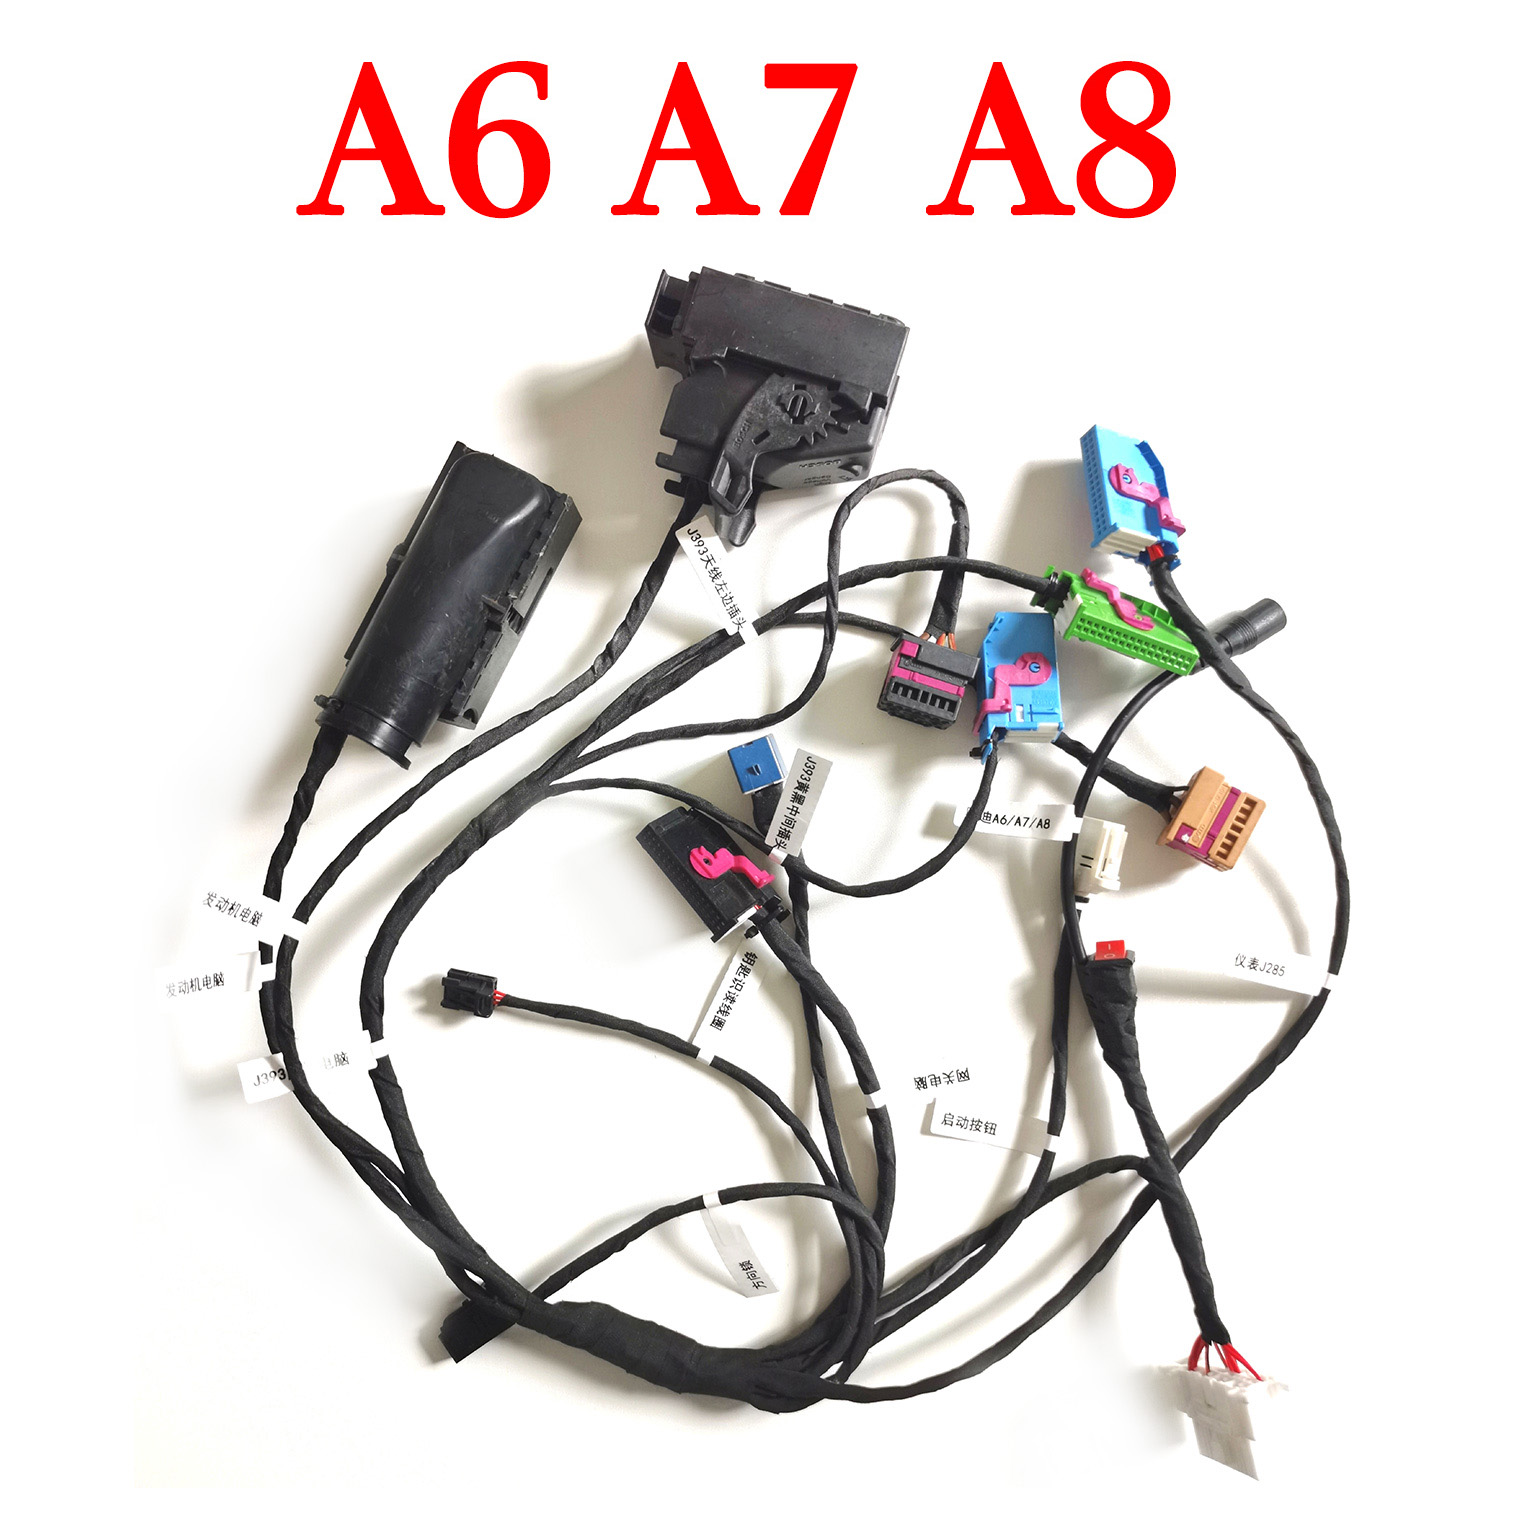 Test Platform Cable for Audi A6 A7 A8